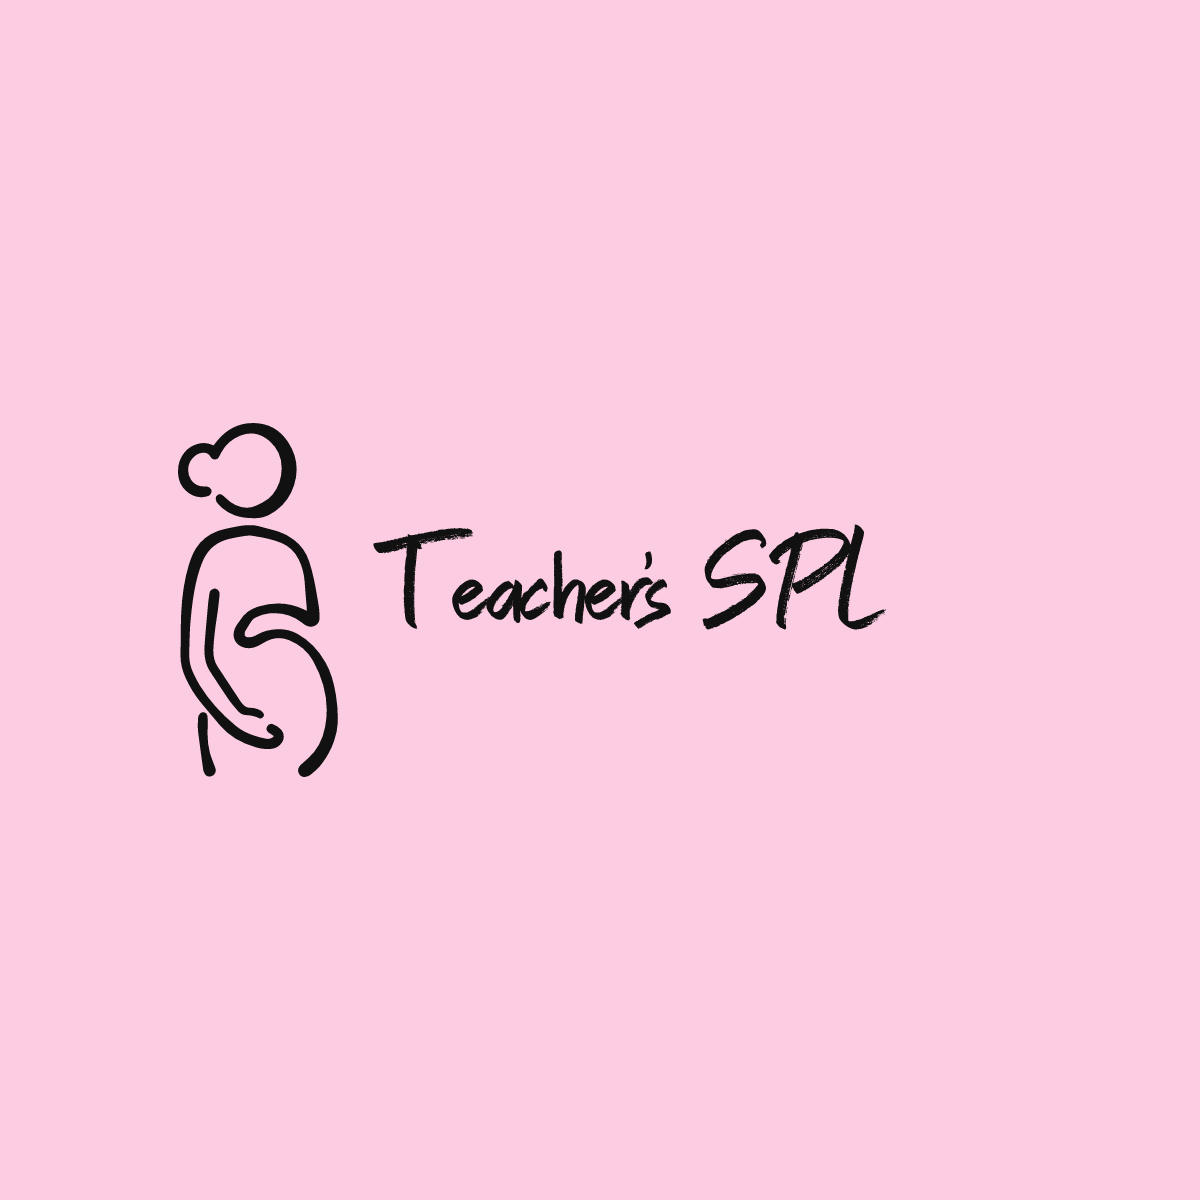 www.teachersspl.co.uk